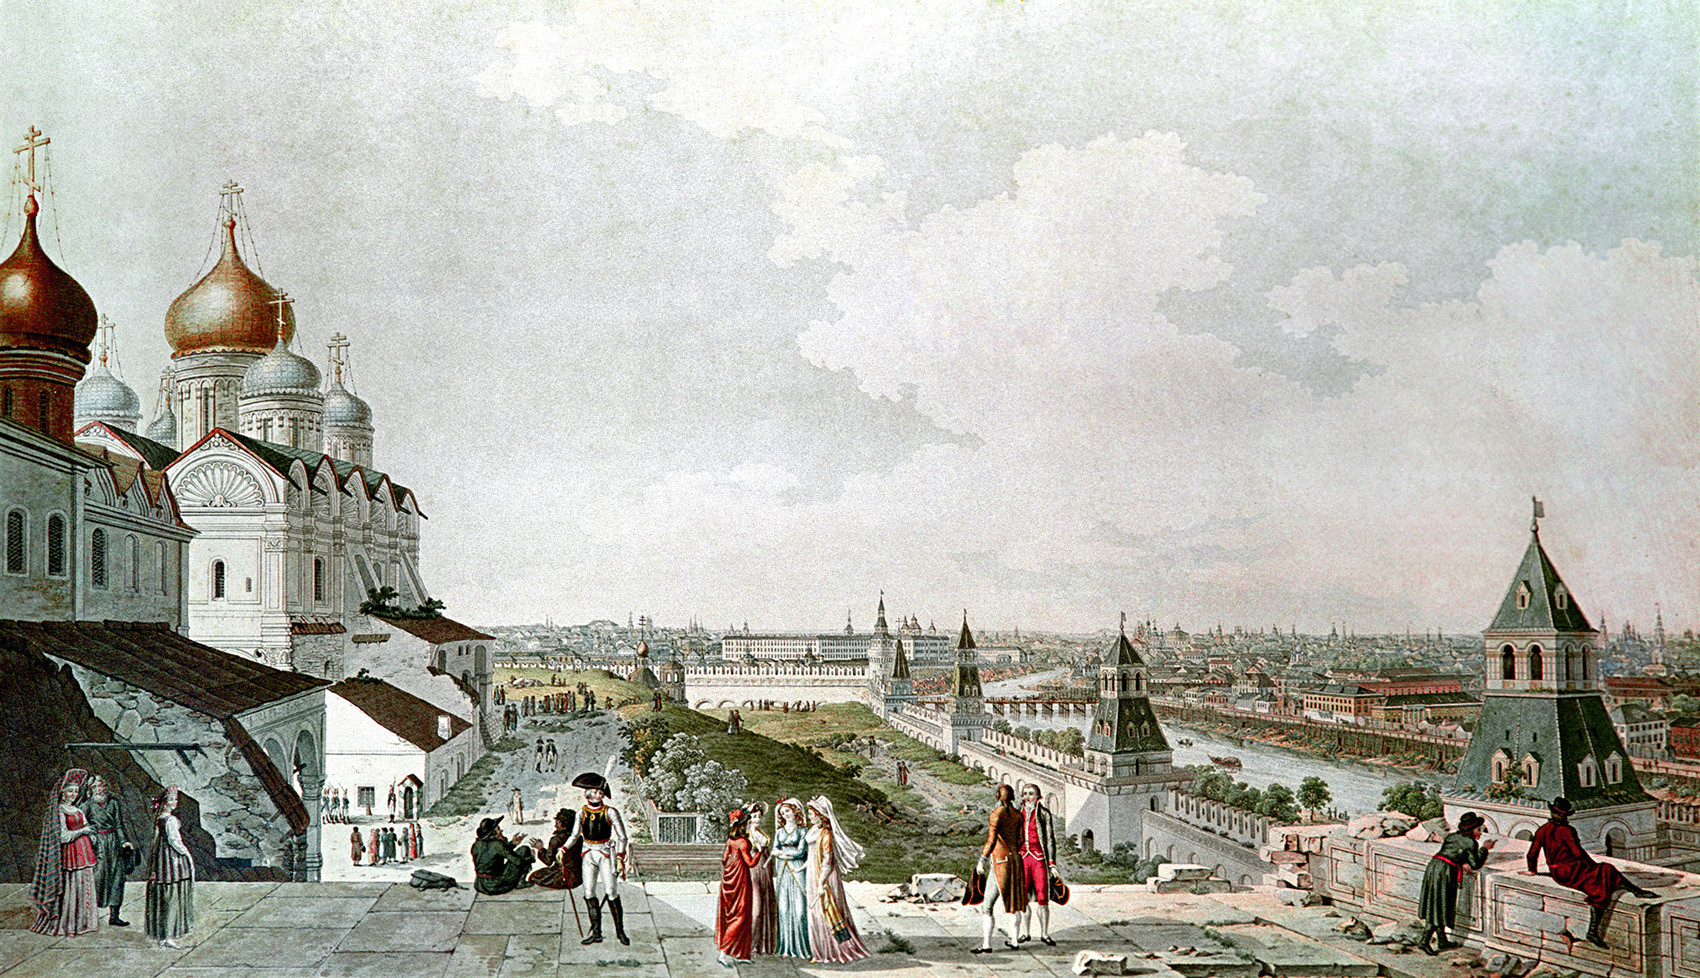 1800年代、ジェラール・デラバルトの絵画のもとで不明な画家によって作られた版画。皇帝の宮殿のバルコニーから見たモスクワの景色。国立歴史博物館、モスクワ。